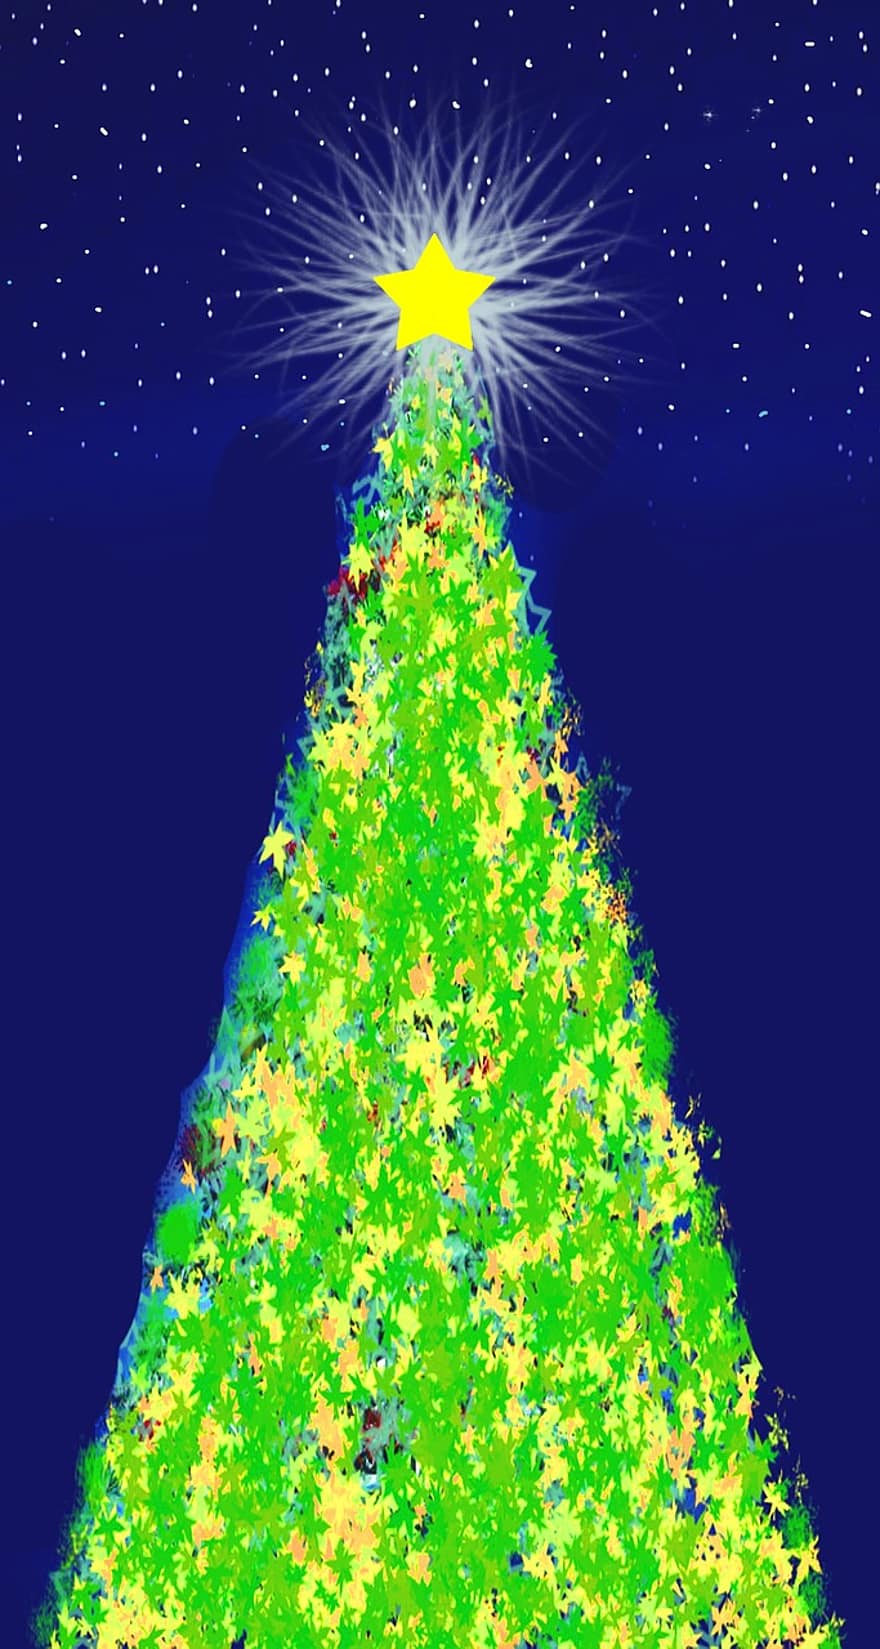 Χριστούγεννα, poinsettia, στέμμα, αστέρι, έλατο, χριστουγεννιάτικο δέντρο, έλευση, Νύχτα, χιόνι, ουρανός, μπλε